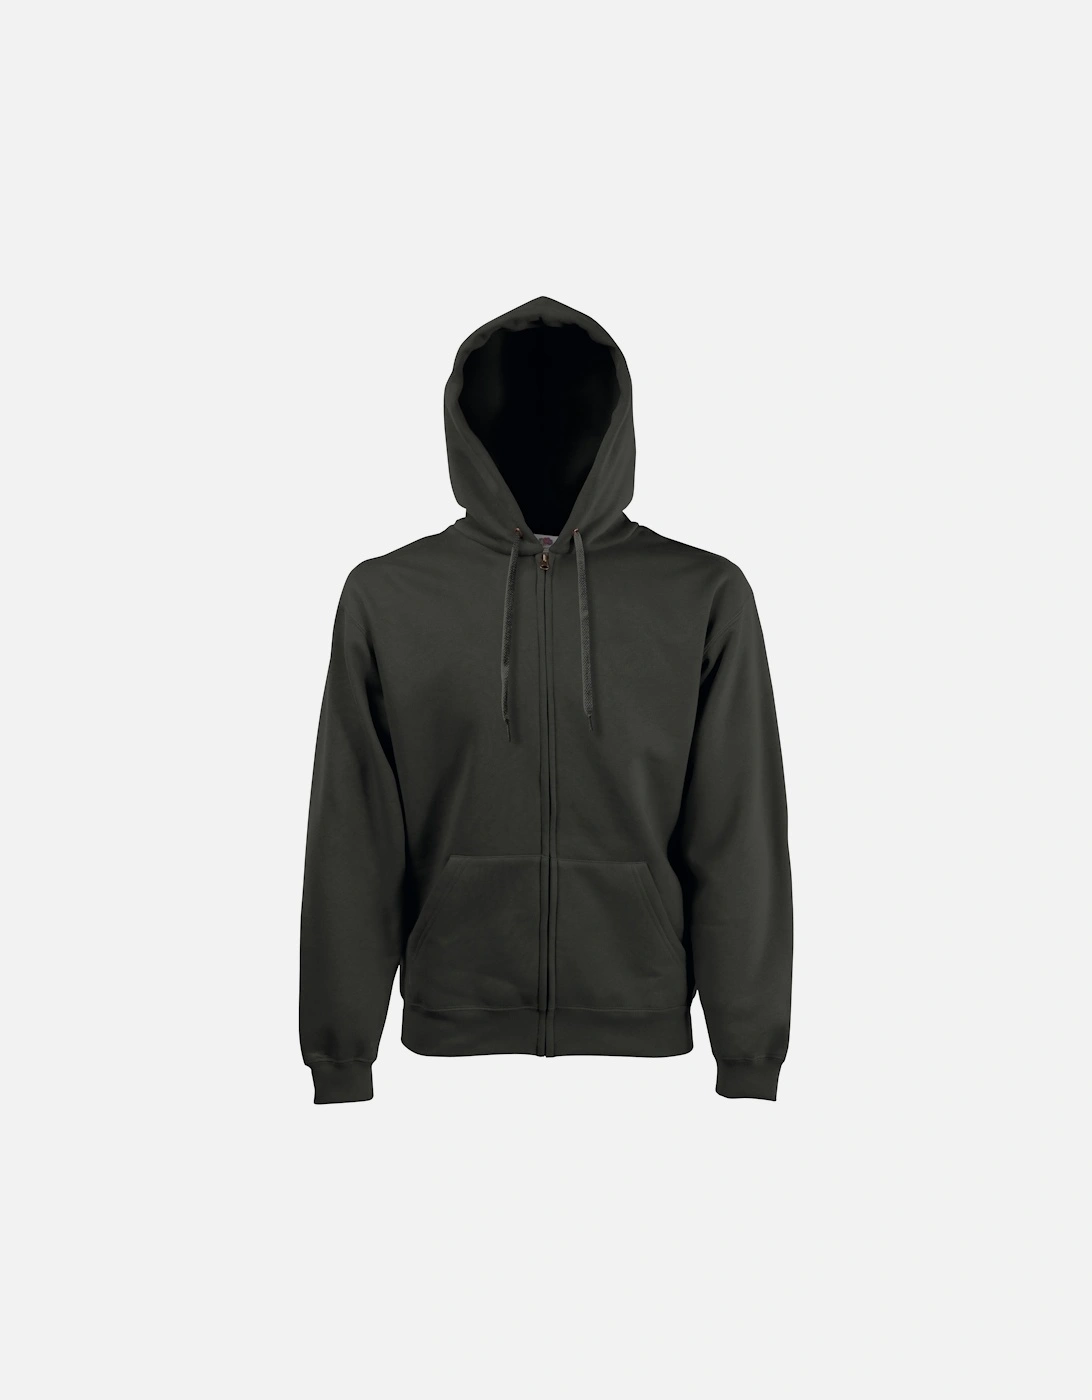 Mens Premium 70/30 Hooded Zip-Up Sweatshirt / Hoodie, 3 of 2